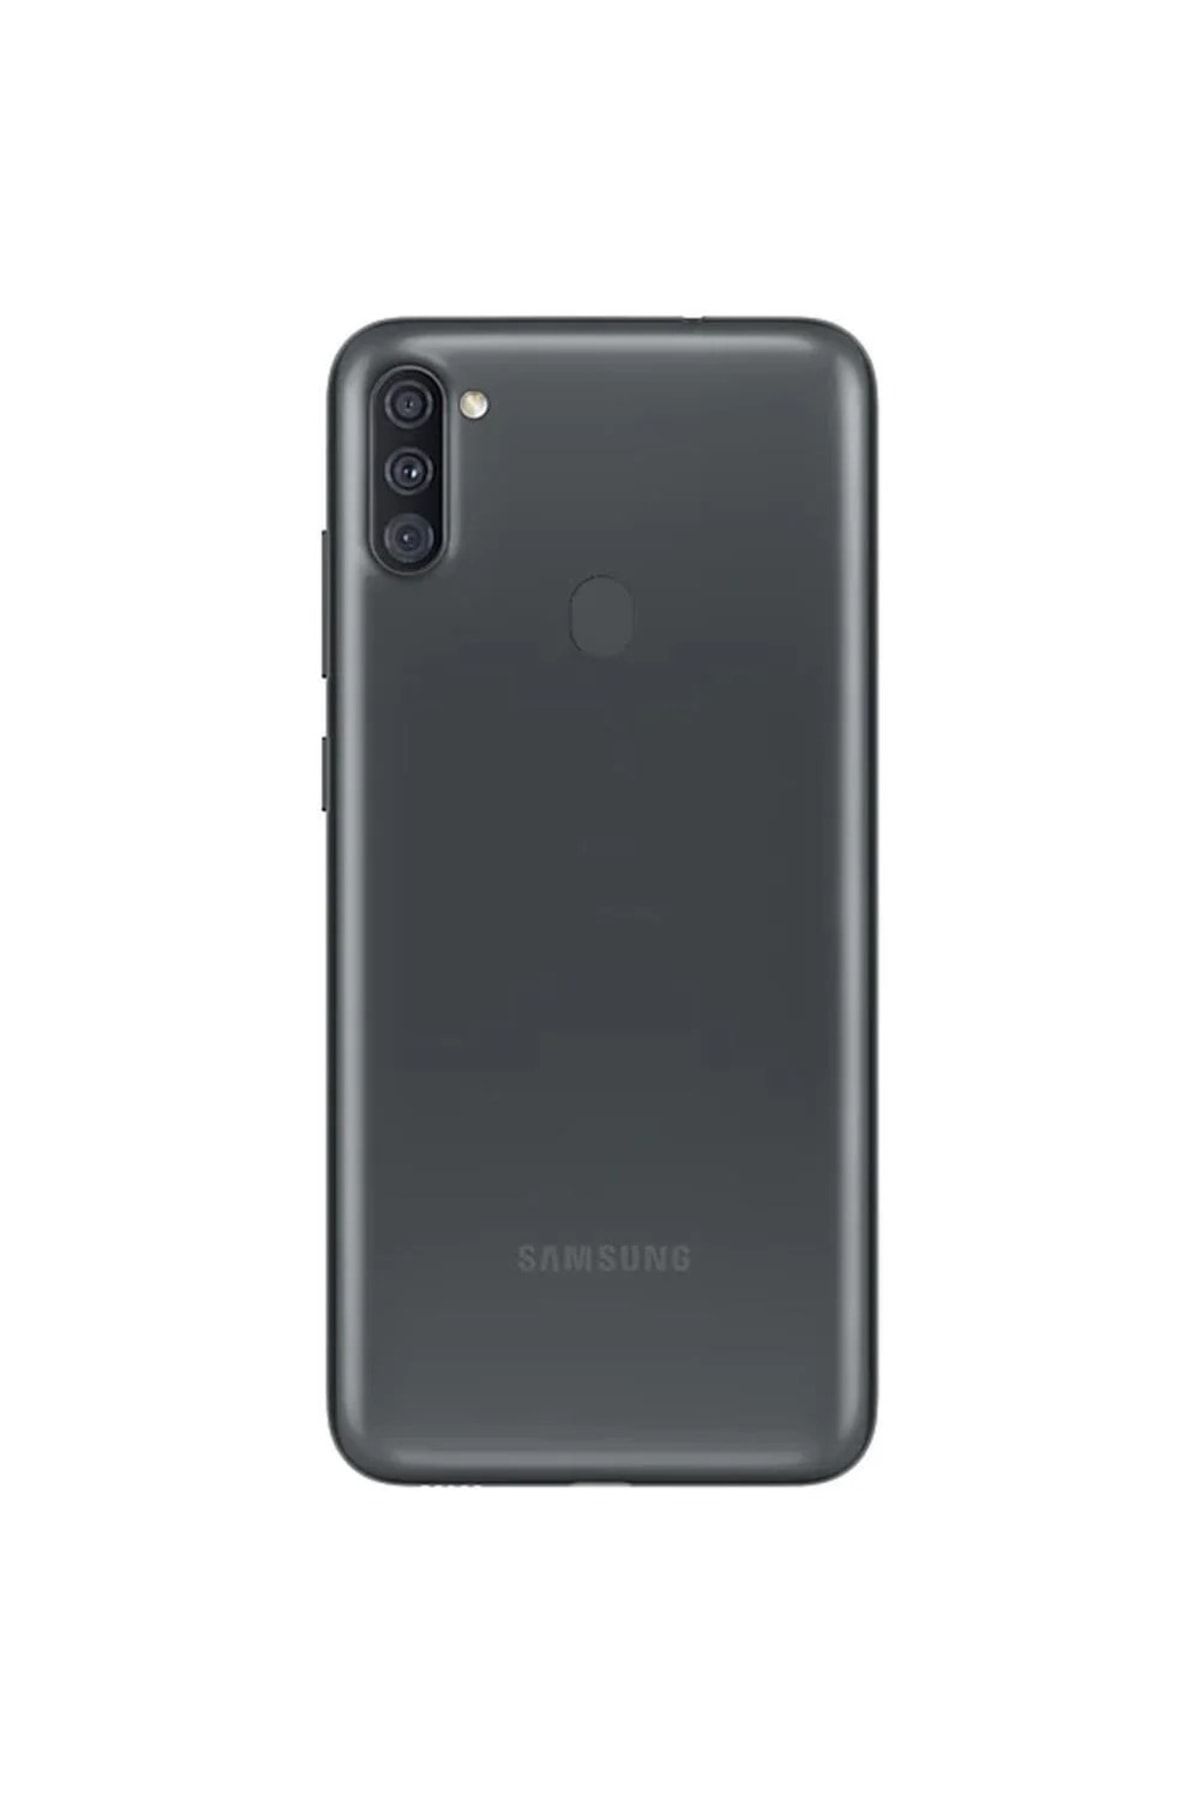 Samsung Yenilenmiş Galaxy A11 32 Gb Black (12 Ay Garantili) B Grade